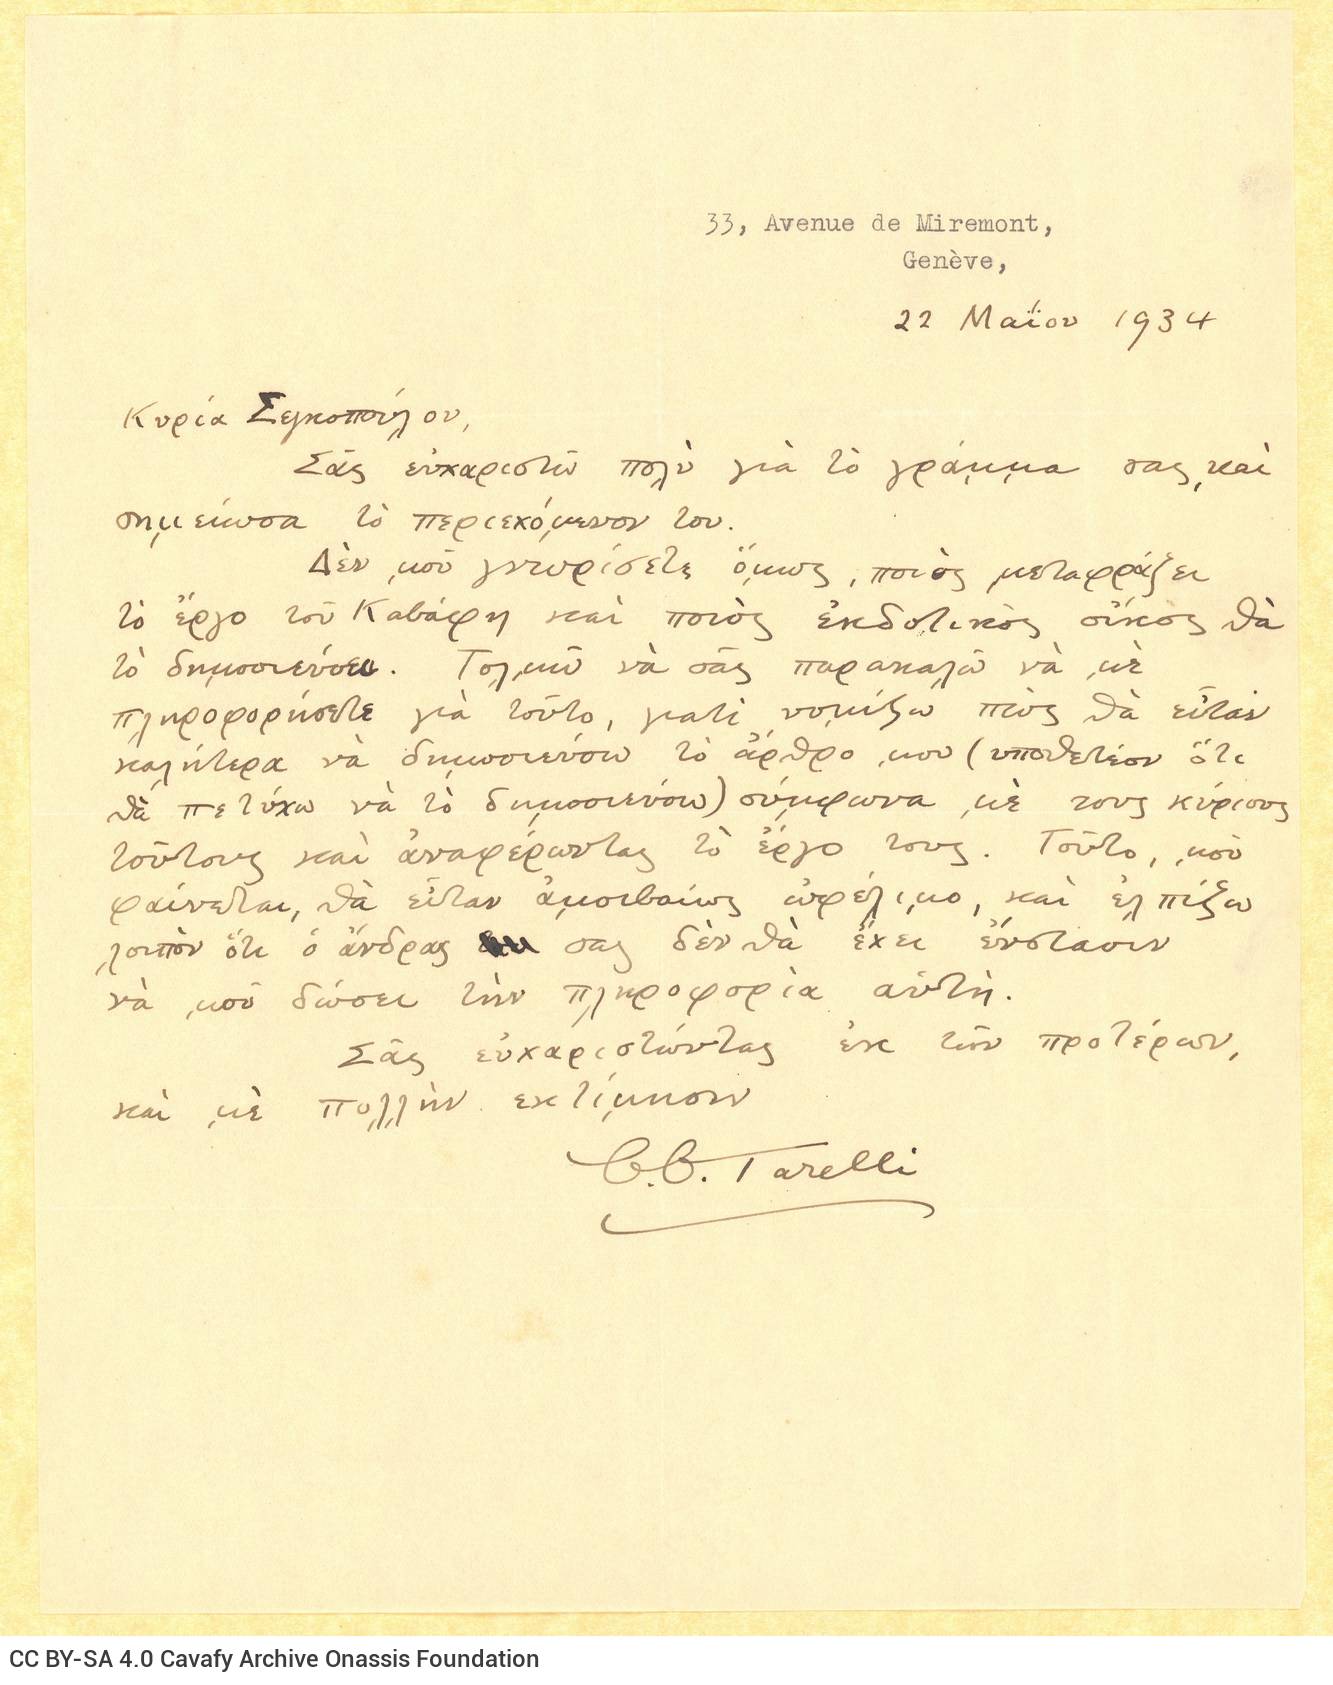 Χειρόγραφη επιστολή του C.C. Tarelli προς τη Ρίκα Σεγκοπούλου στη μία όψη 